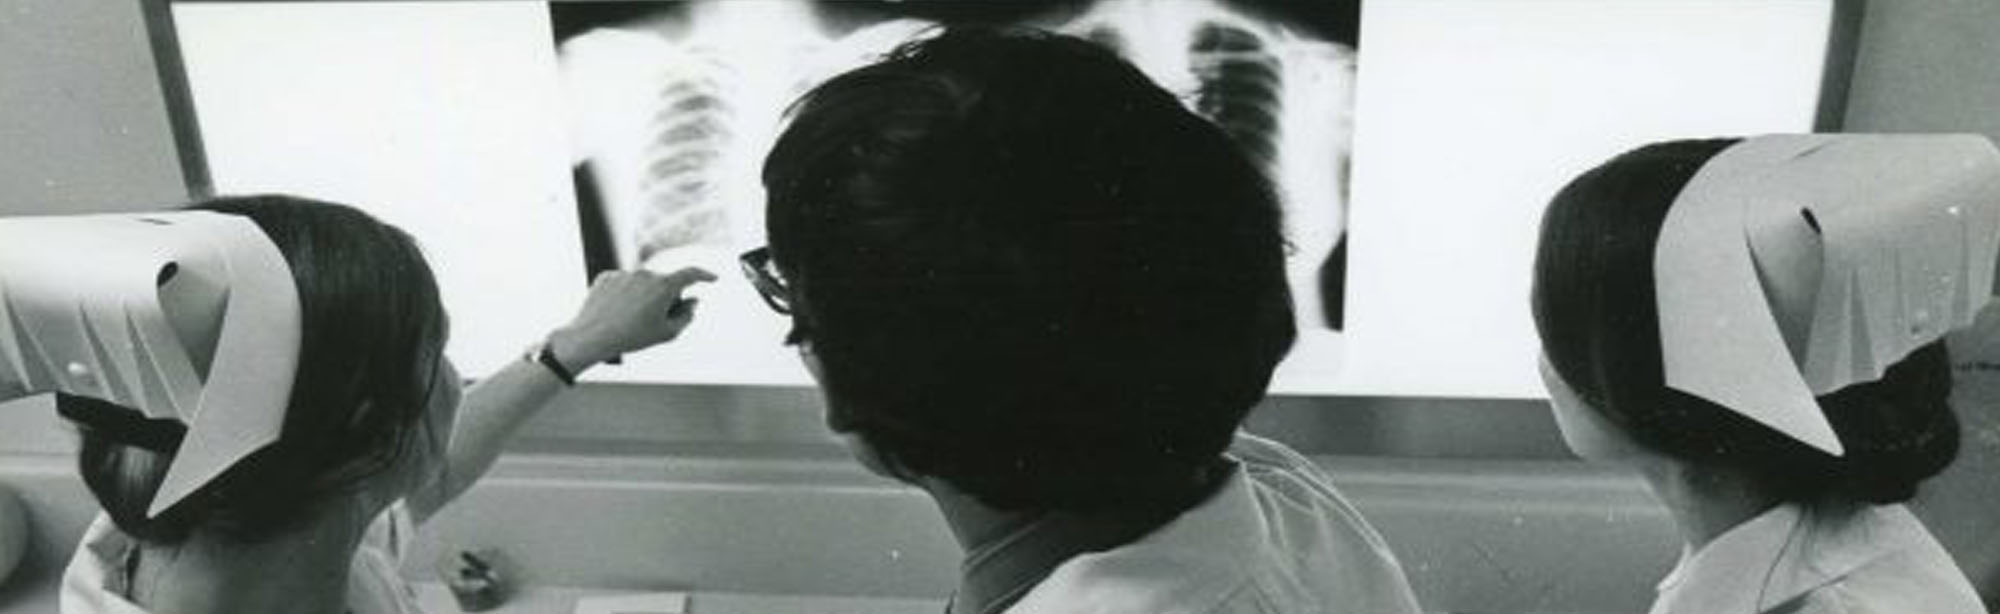 Image of three nurses looking an at x-ray